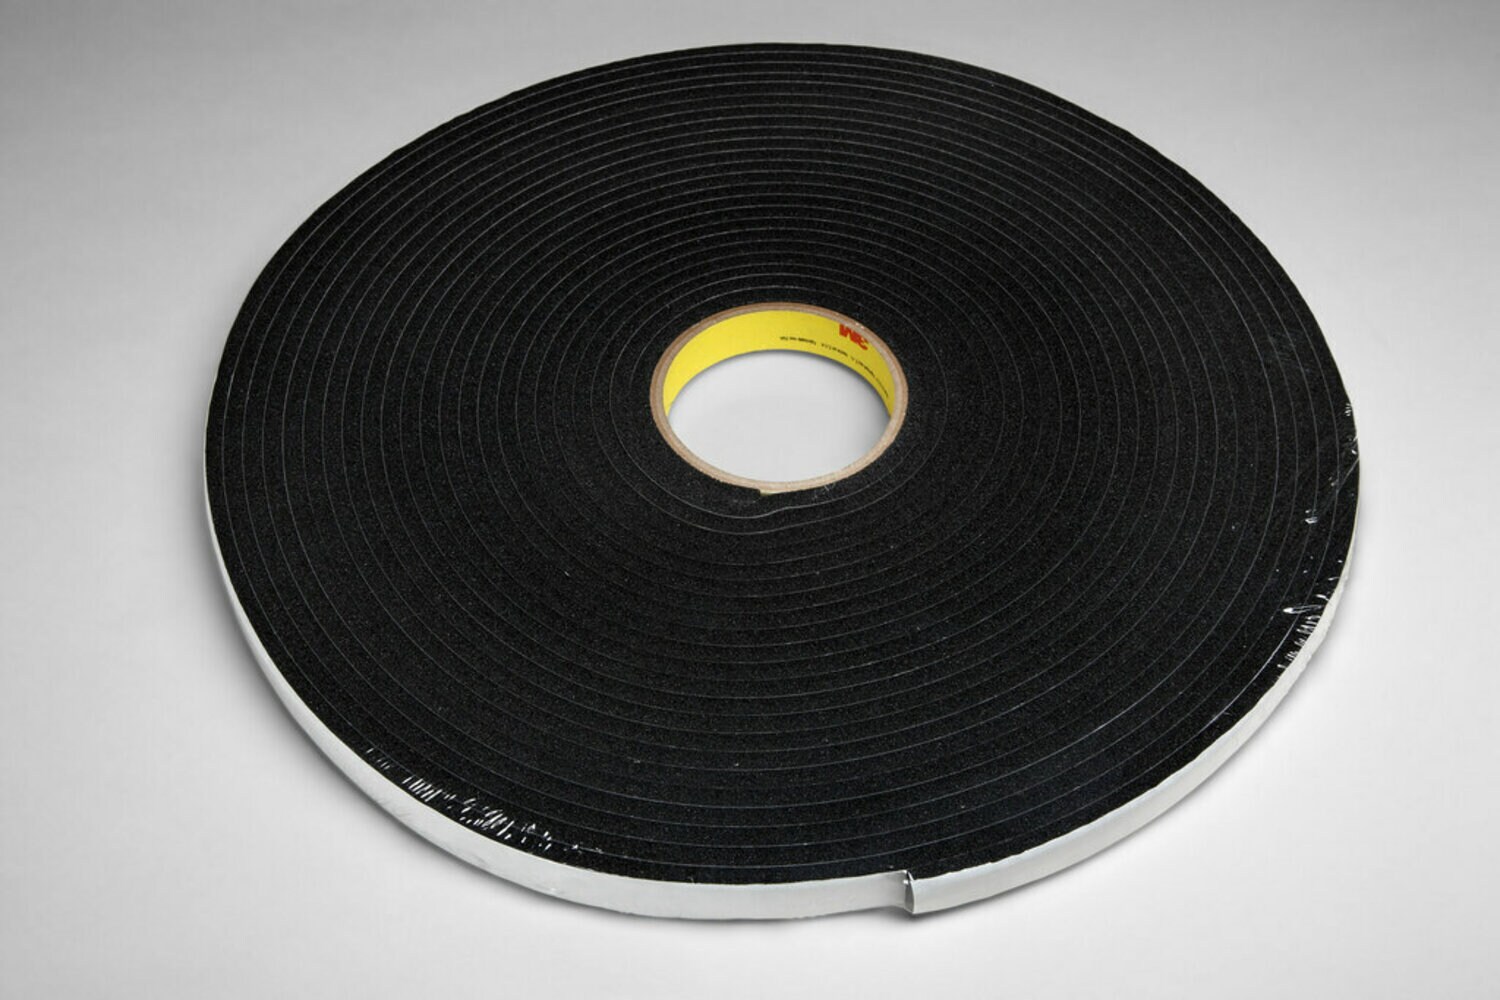 7010312073 - 3M Vinyl Foam Tape 4504, Black, 5/8 in x 18 yd, 250 mil, 15 rolls per
case